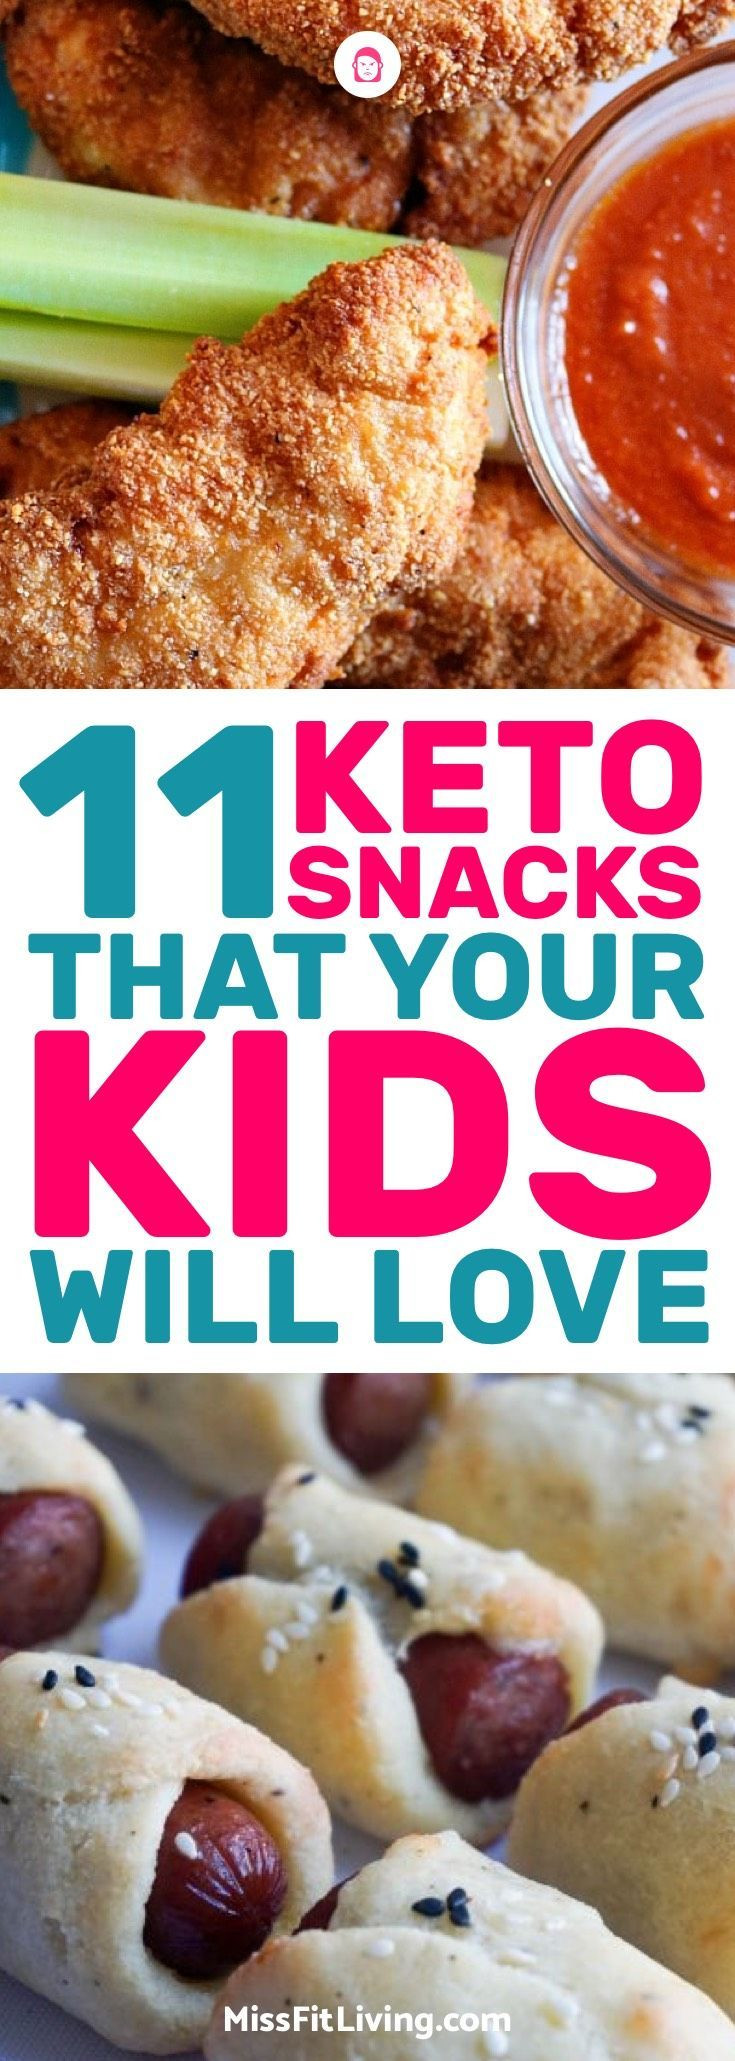 Keto Diet Snacks For Kids
 Keto Snacks for Kids 11 Delicious Ketogenic Snacks Kids